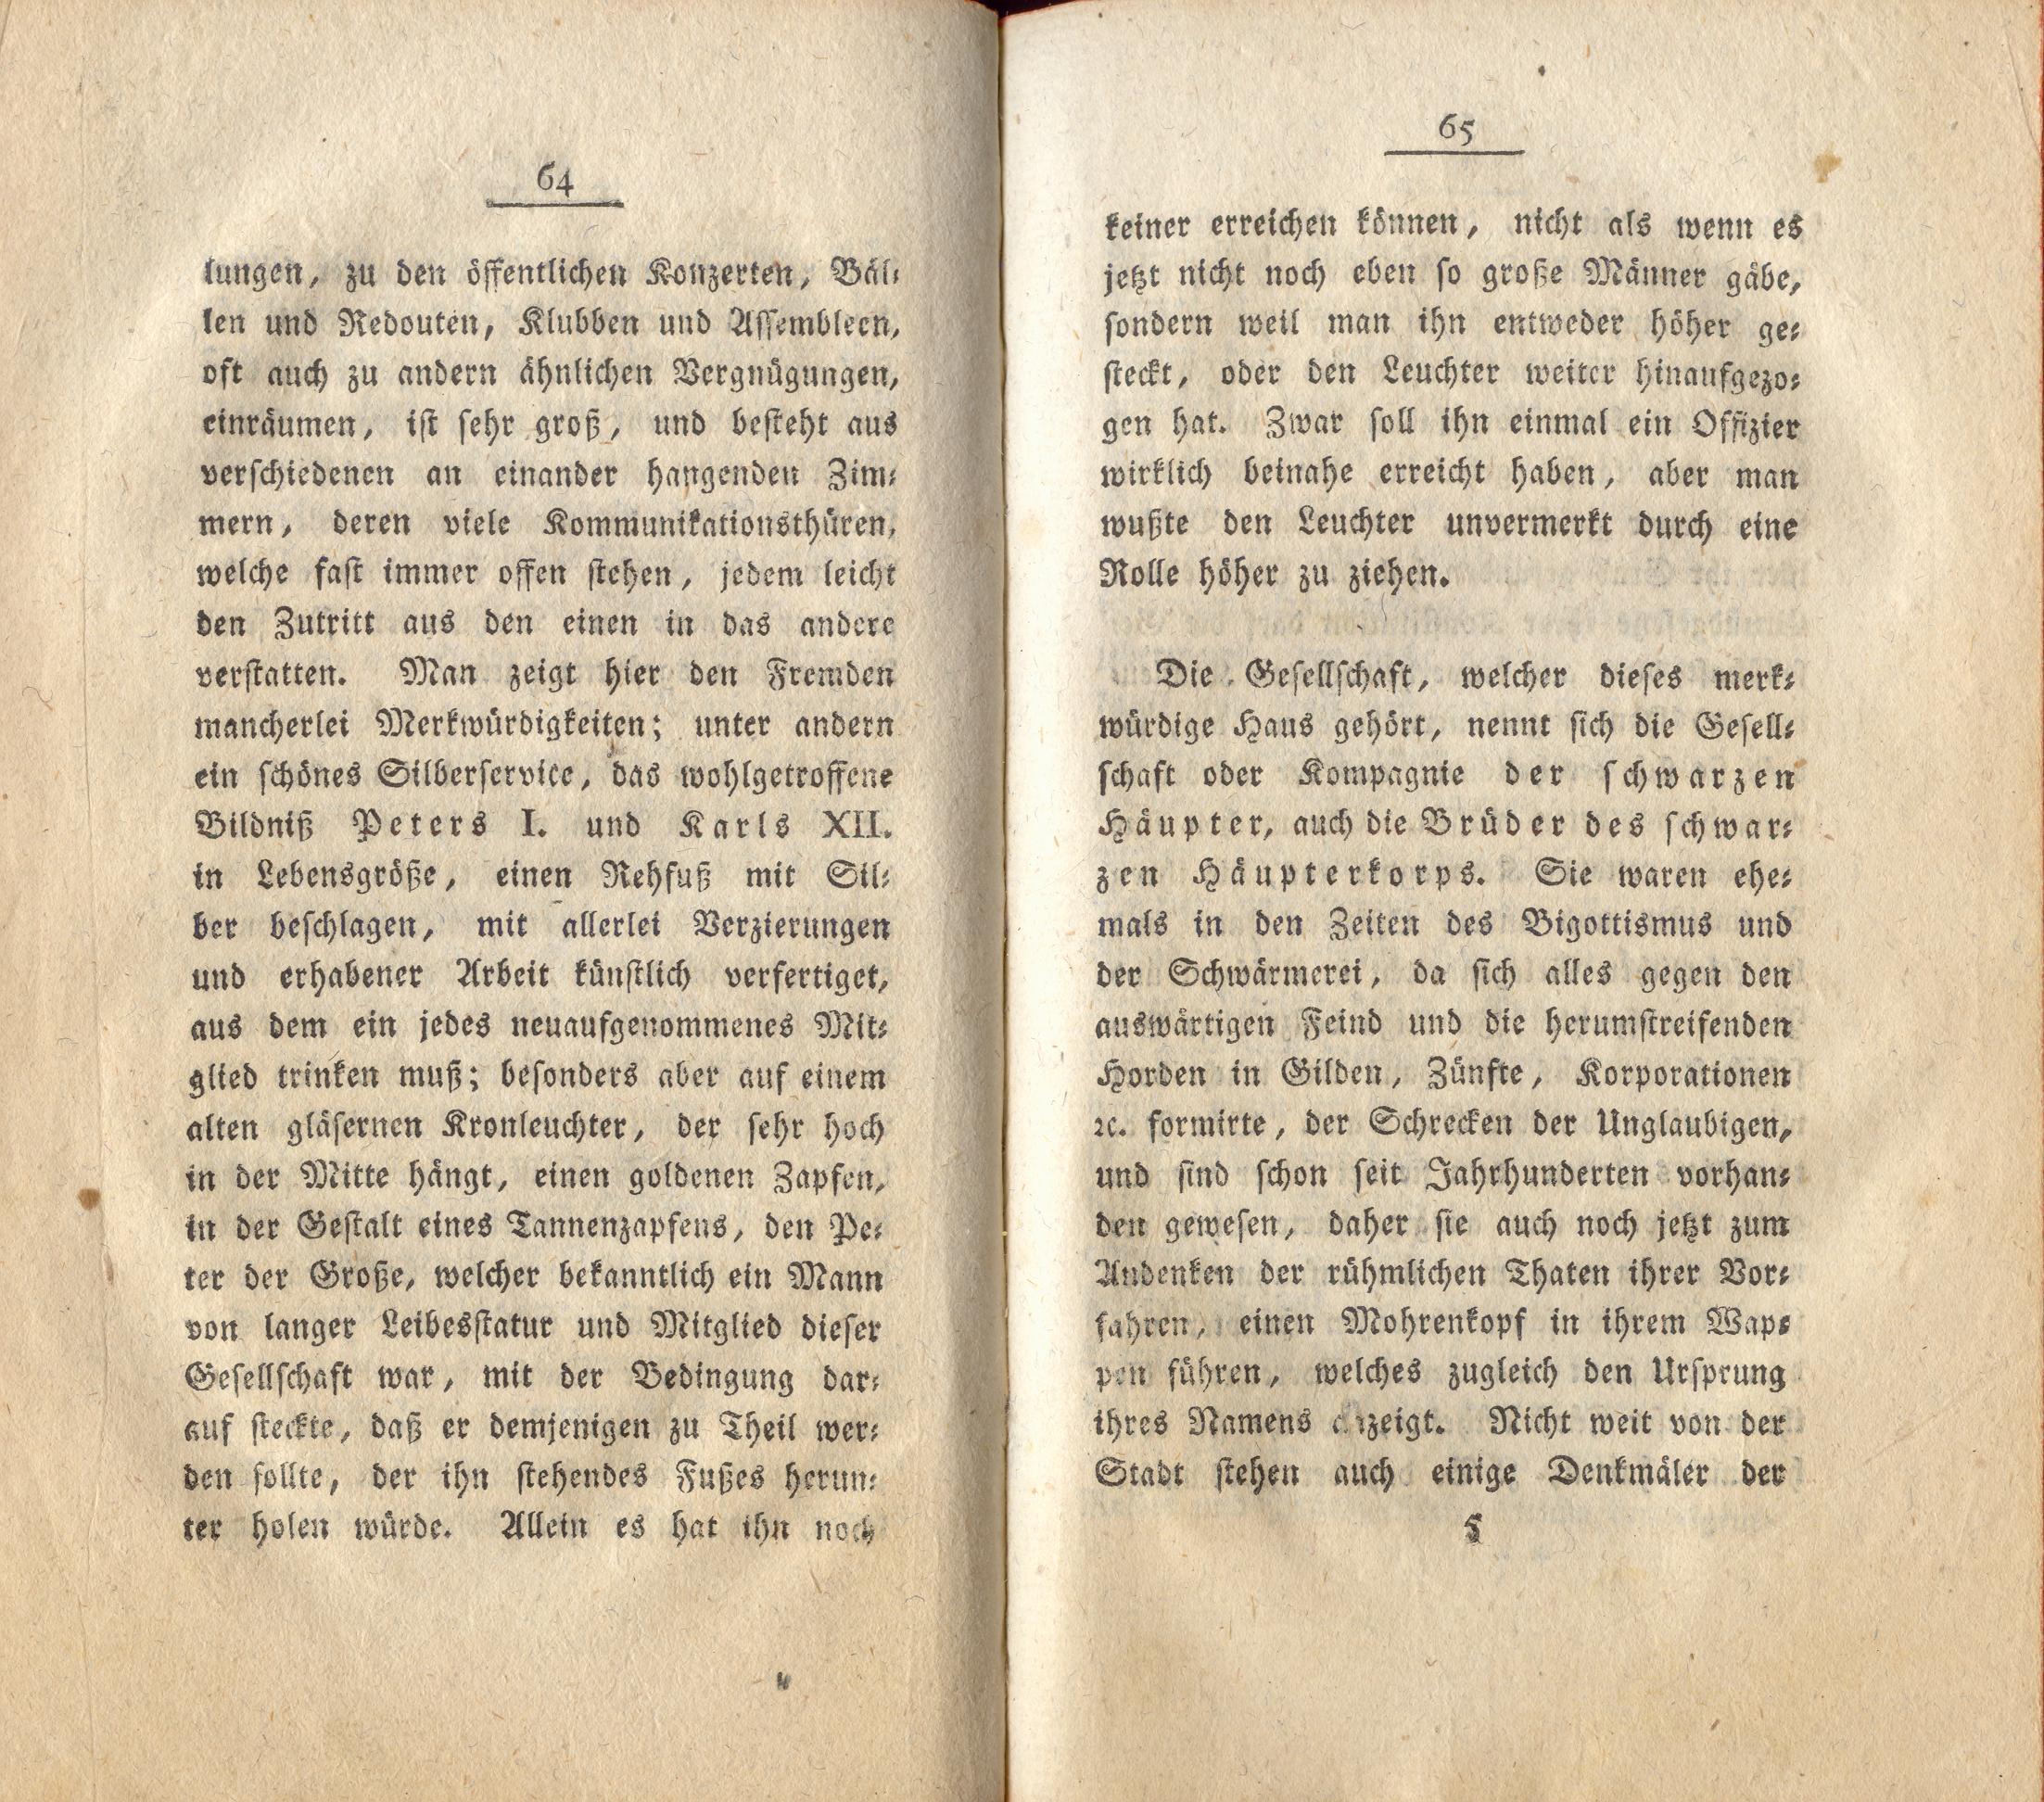 Neue Pittoresken aus Norden (1805) | 37. (64-65) Main body of text